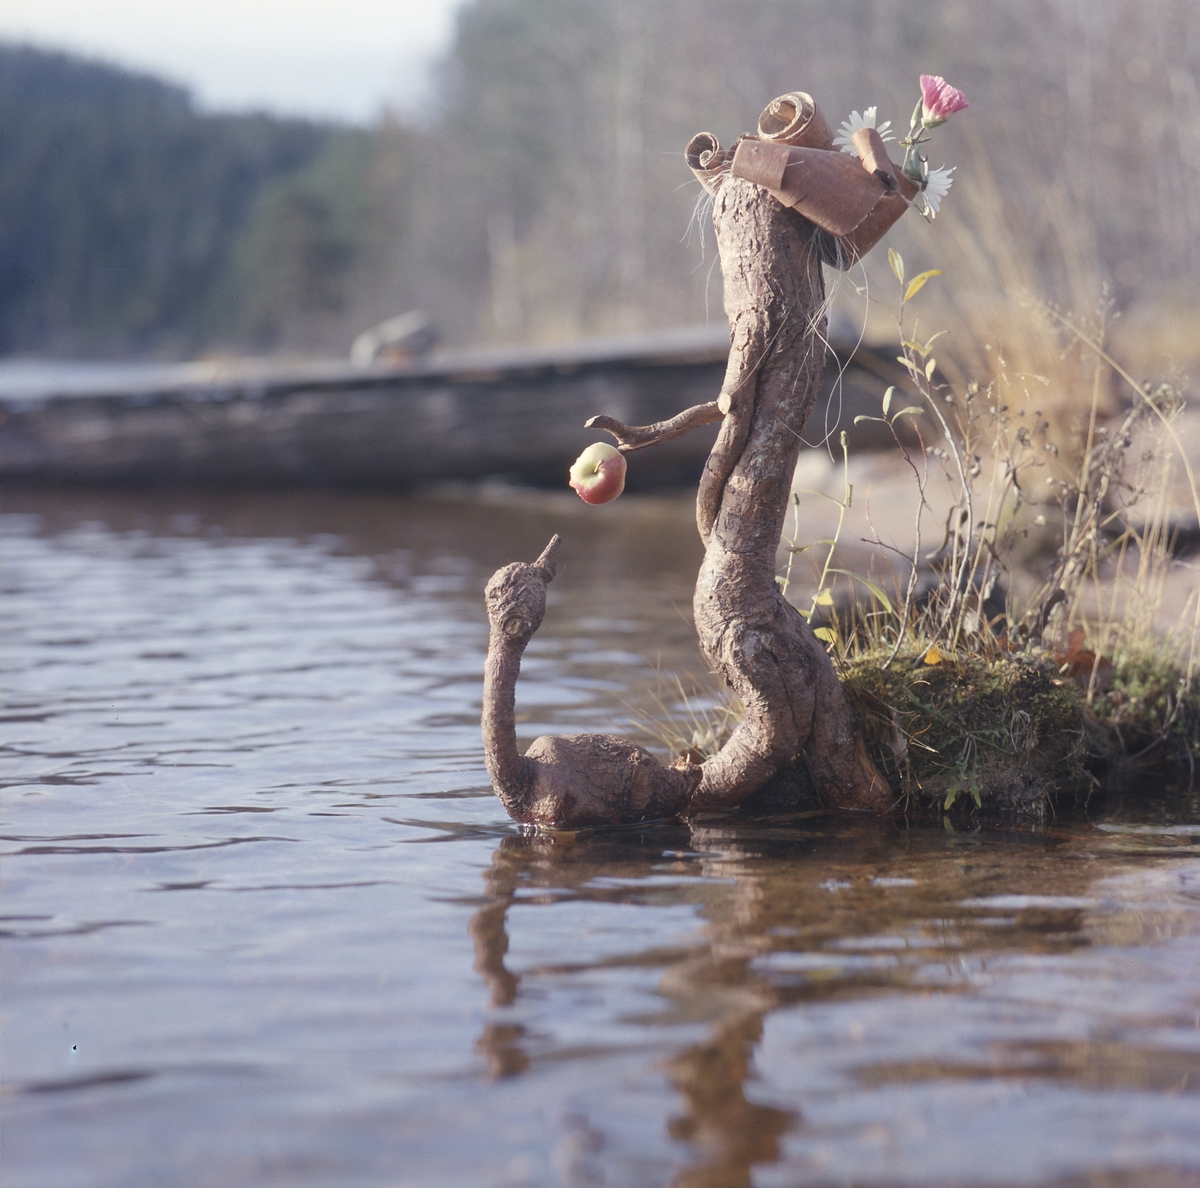 Trätrollet Skrälla Skrälle pyntad med blommor står nere vid vattnet och matar en träfågel med ett äpple.